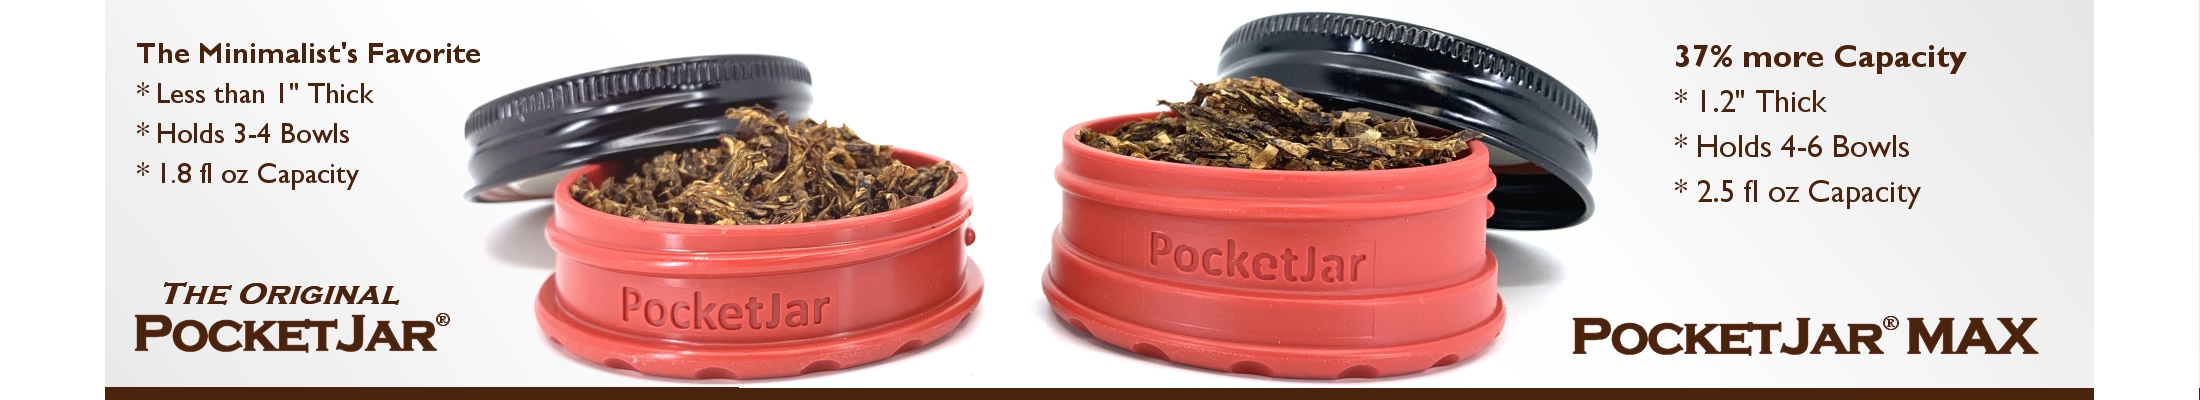 PocketJar(r) and PocketJar(r)MAX